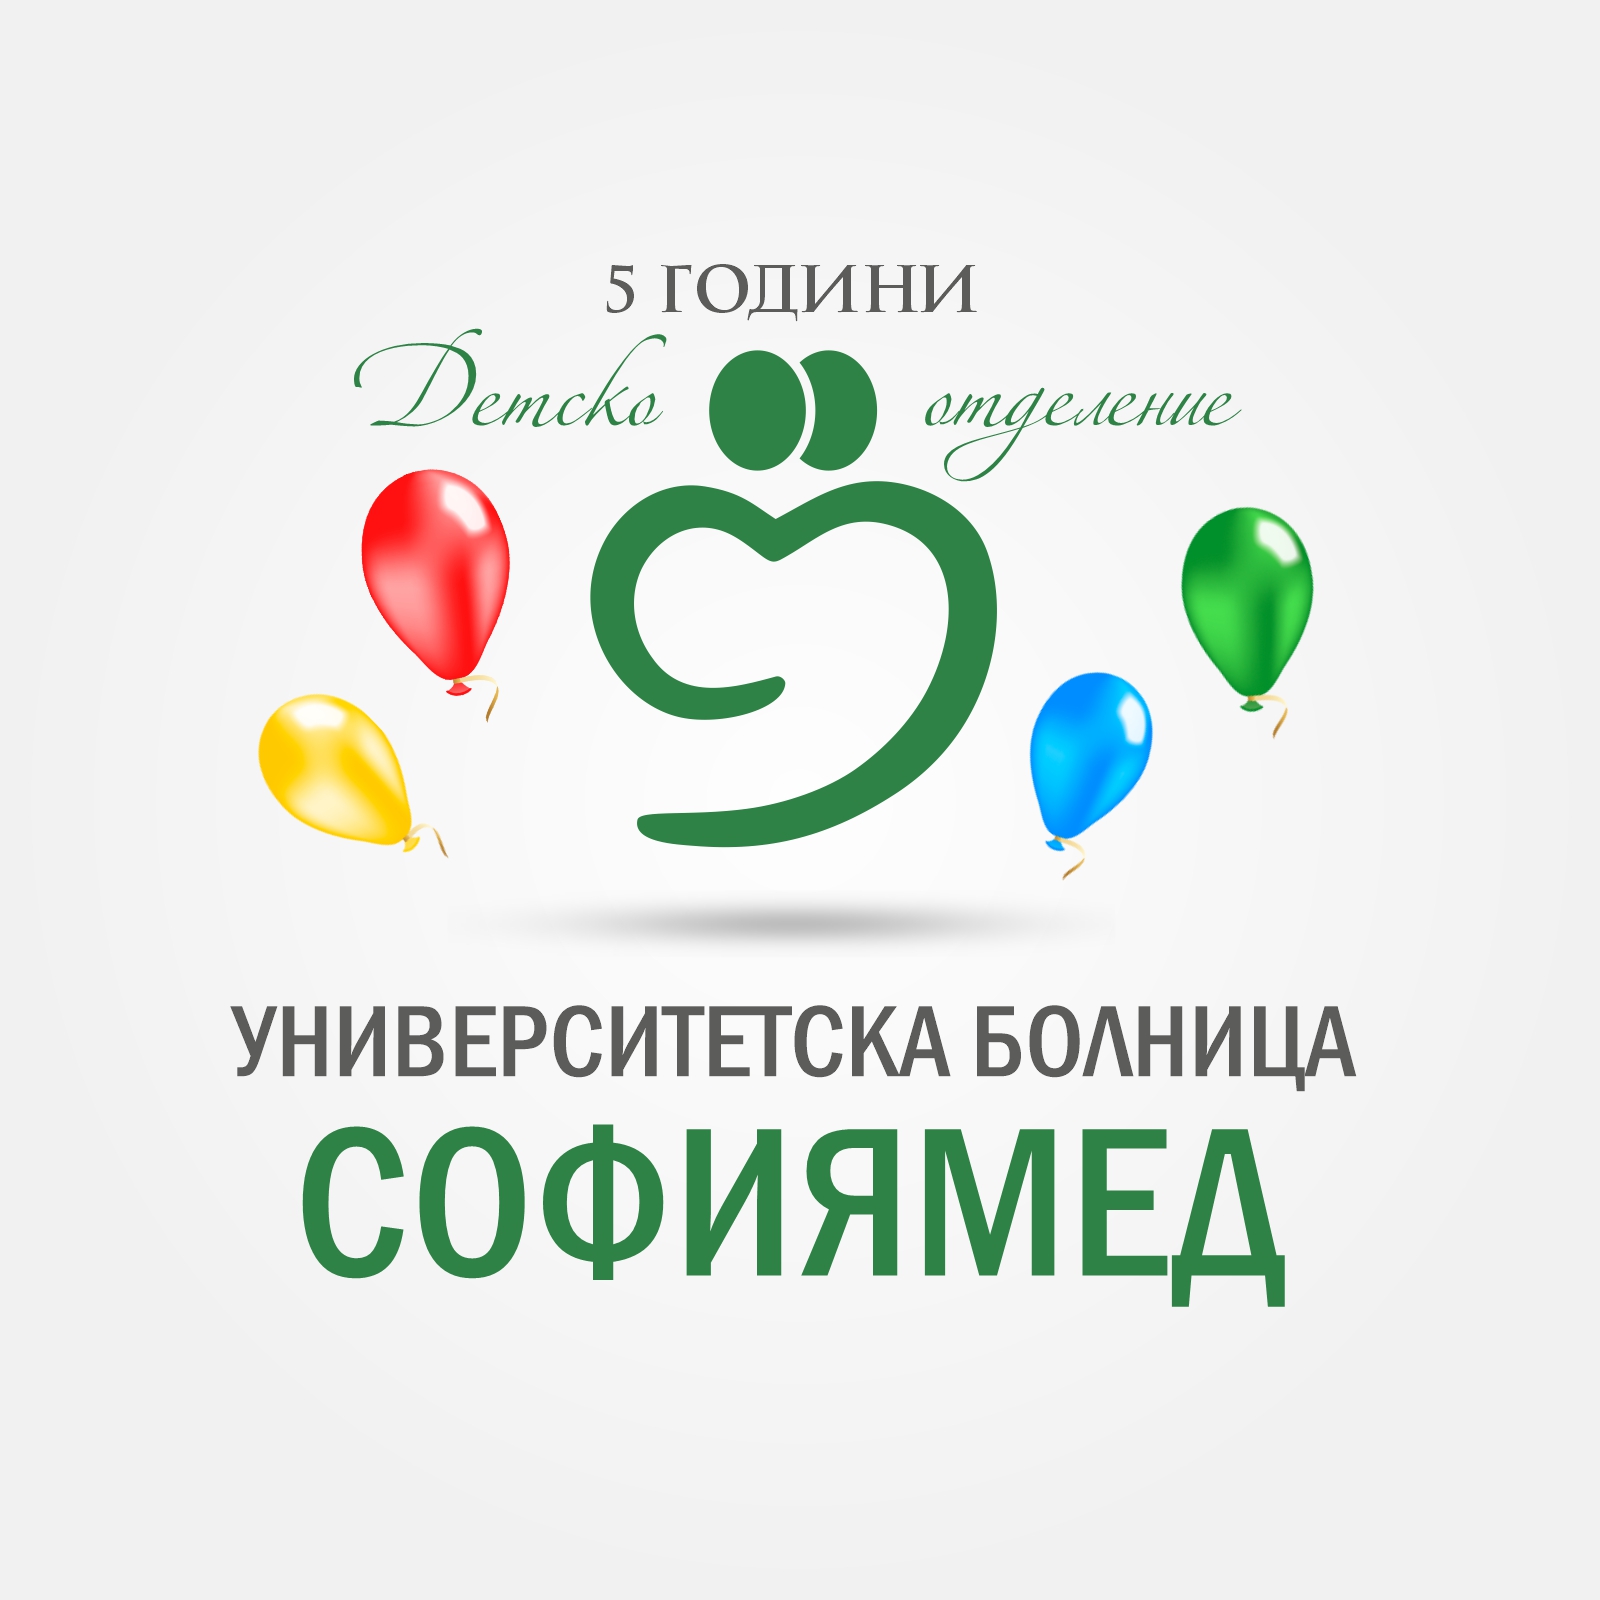 Честит 5-ти рожден ден на Детско отделение на УМБАЛ „Софиямед“